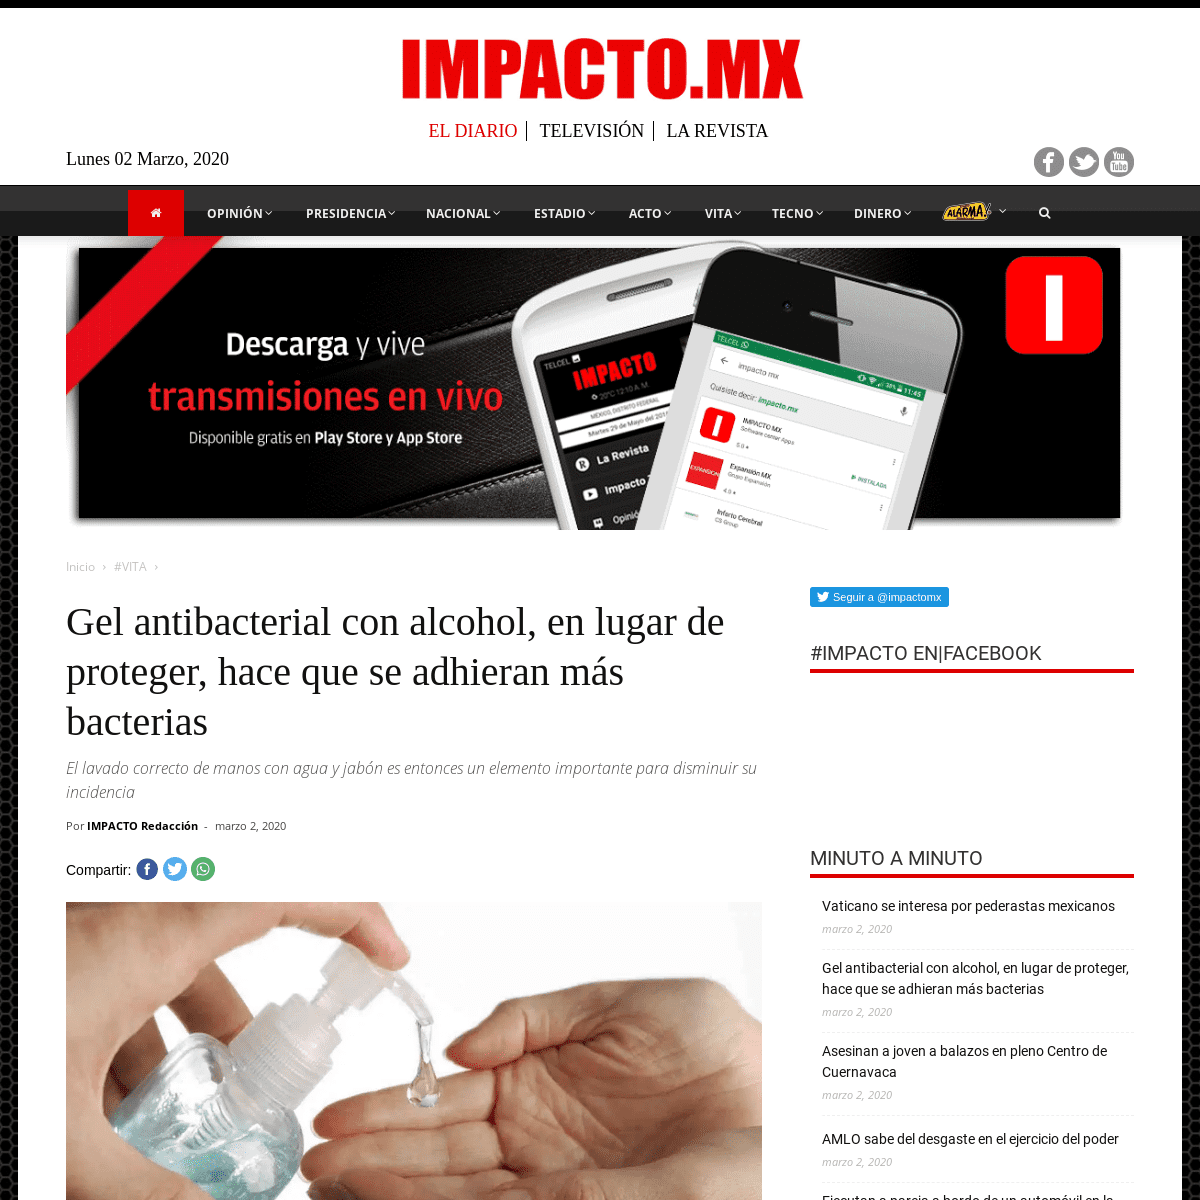 A complete backup of impacto.mx/vita/gel-antibacterial-con-alcohol-en-lugar-de-proteger-hace-que-se-adhieran-mas-bacterias